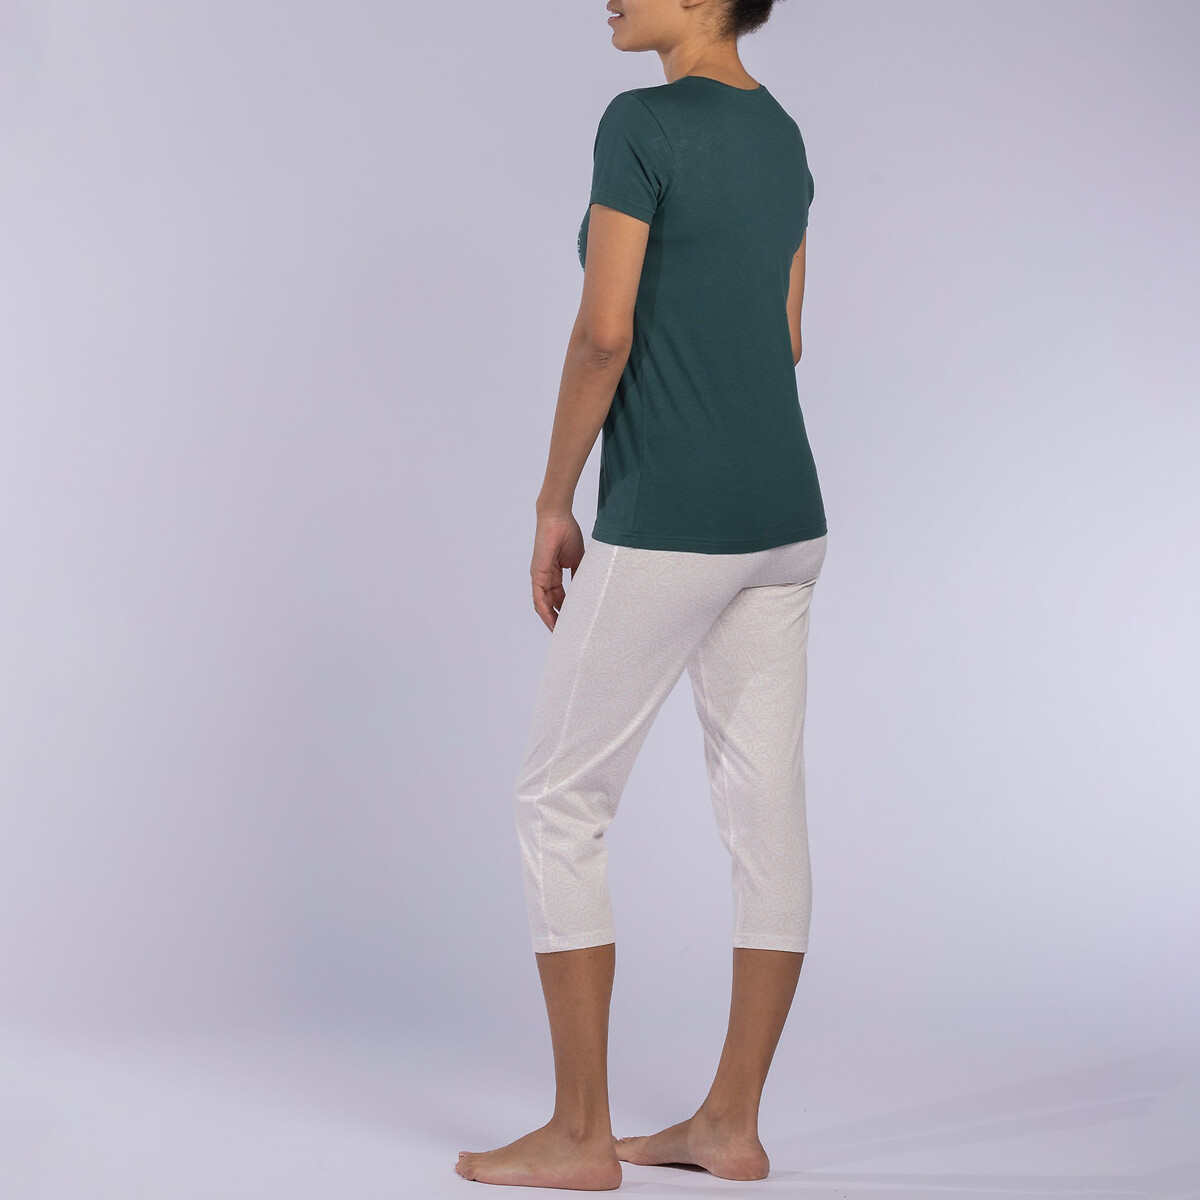 Пижама С брюками-капри из джерси Java XL зеленый LaRedoute, размер XL - фото 3